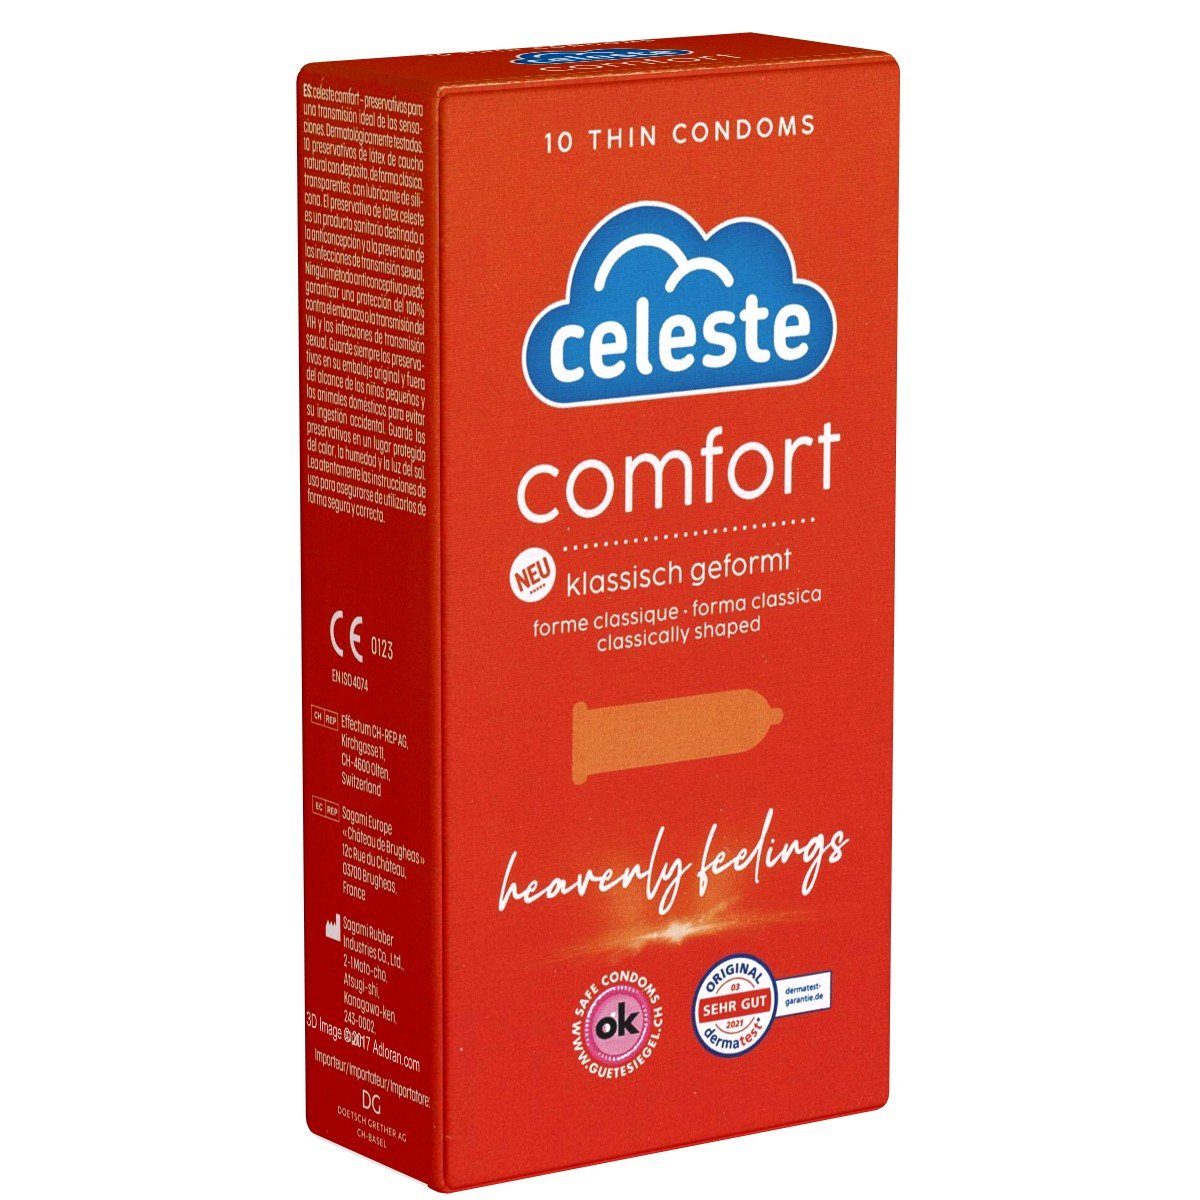 Celeste Kondome Comfort Packung mit, 10 St., klassische Kondome für himmlische Gefühle